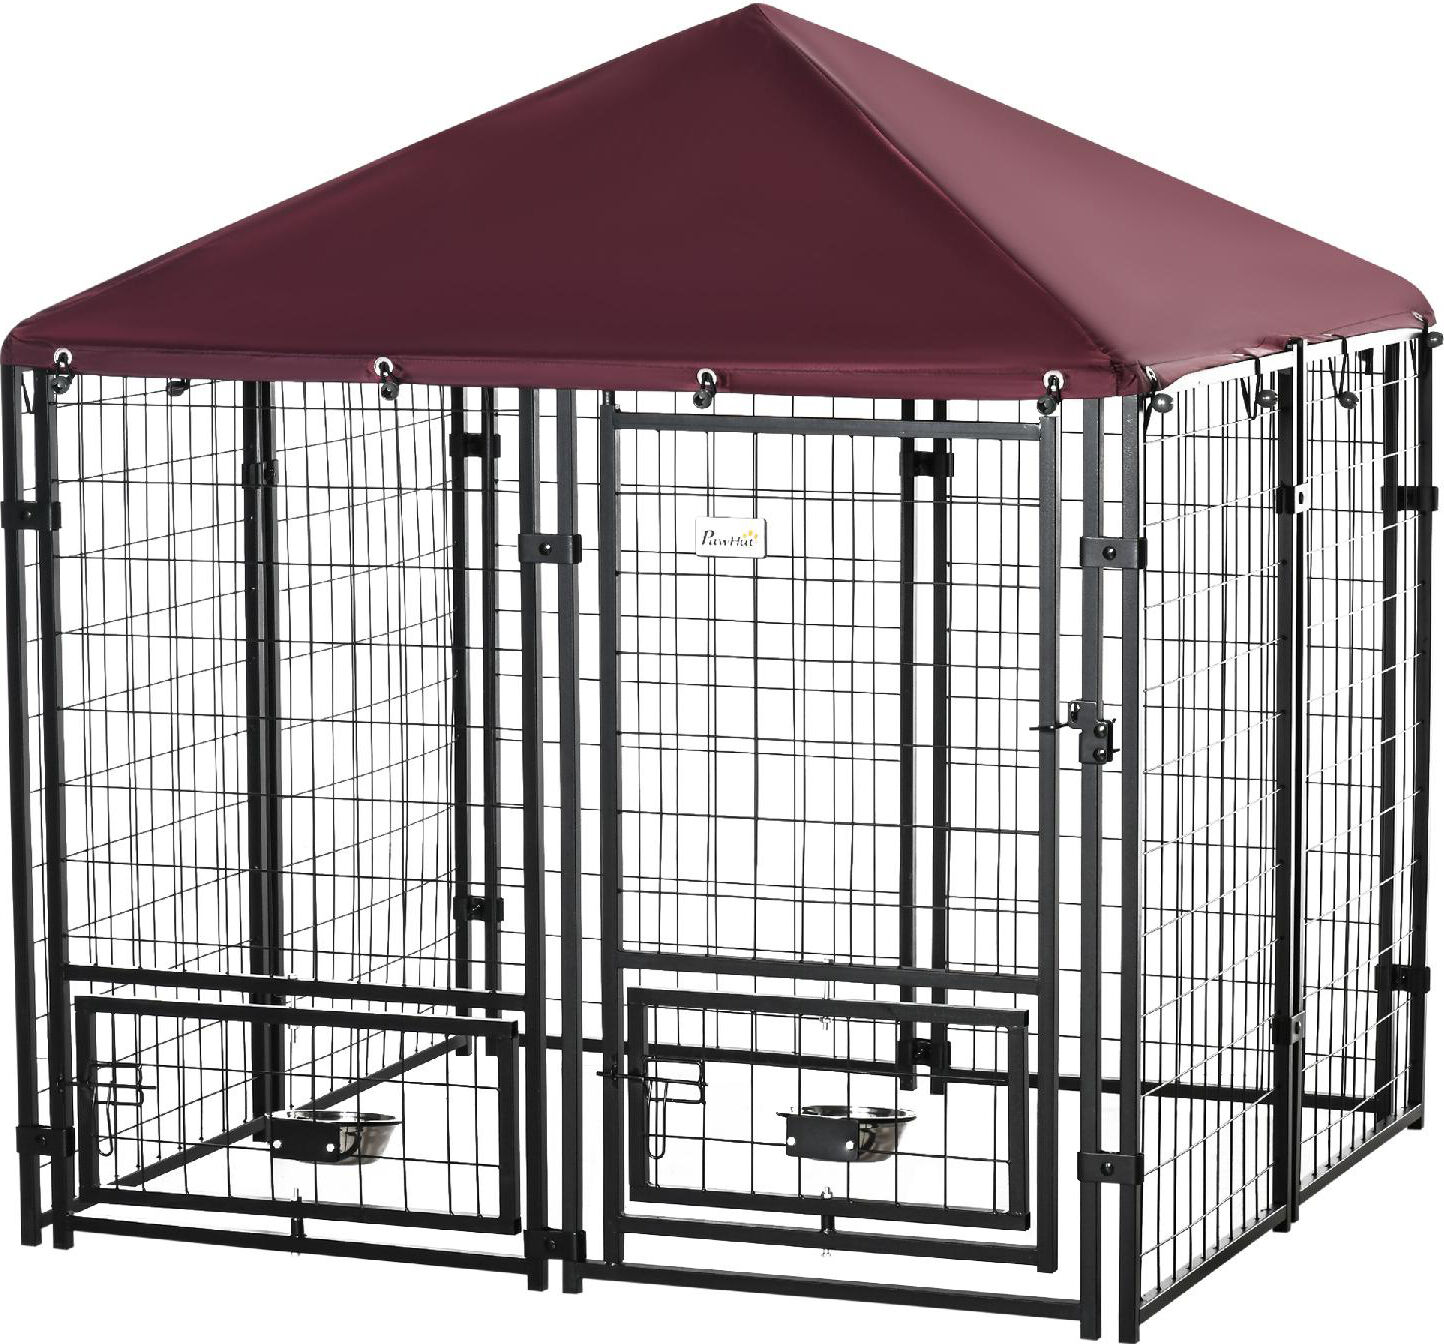 dechome 92d02 recinto per cani da esterno con serratura 2 ciotole girevoli e copertura rimovibile nero e rosso - 92d02